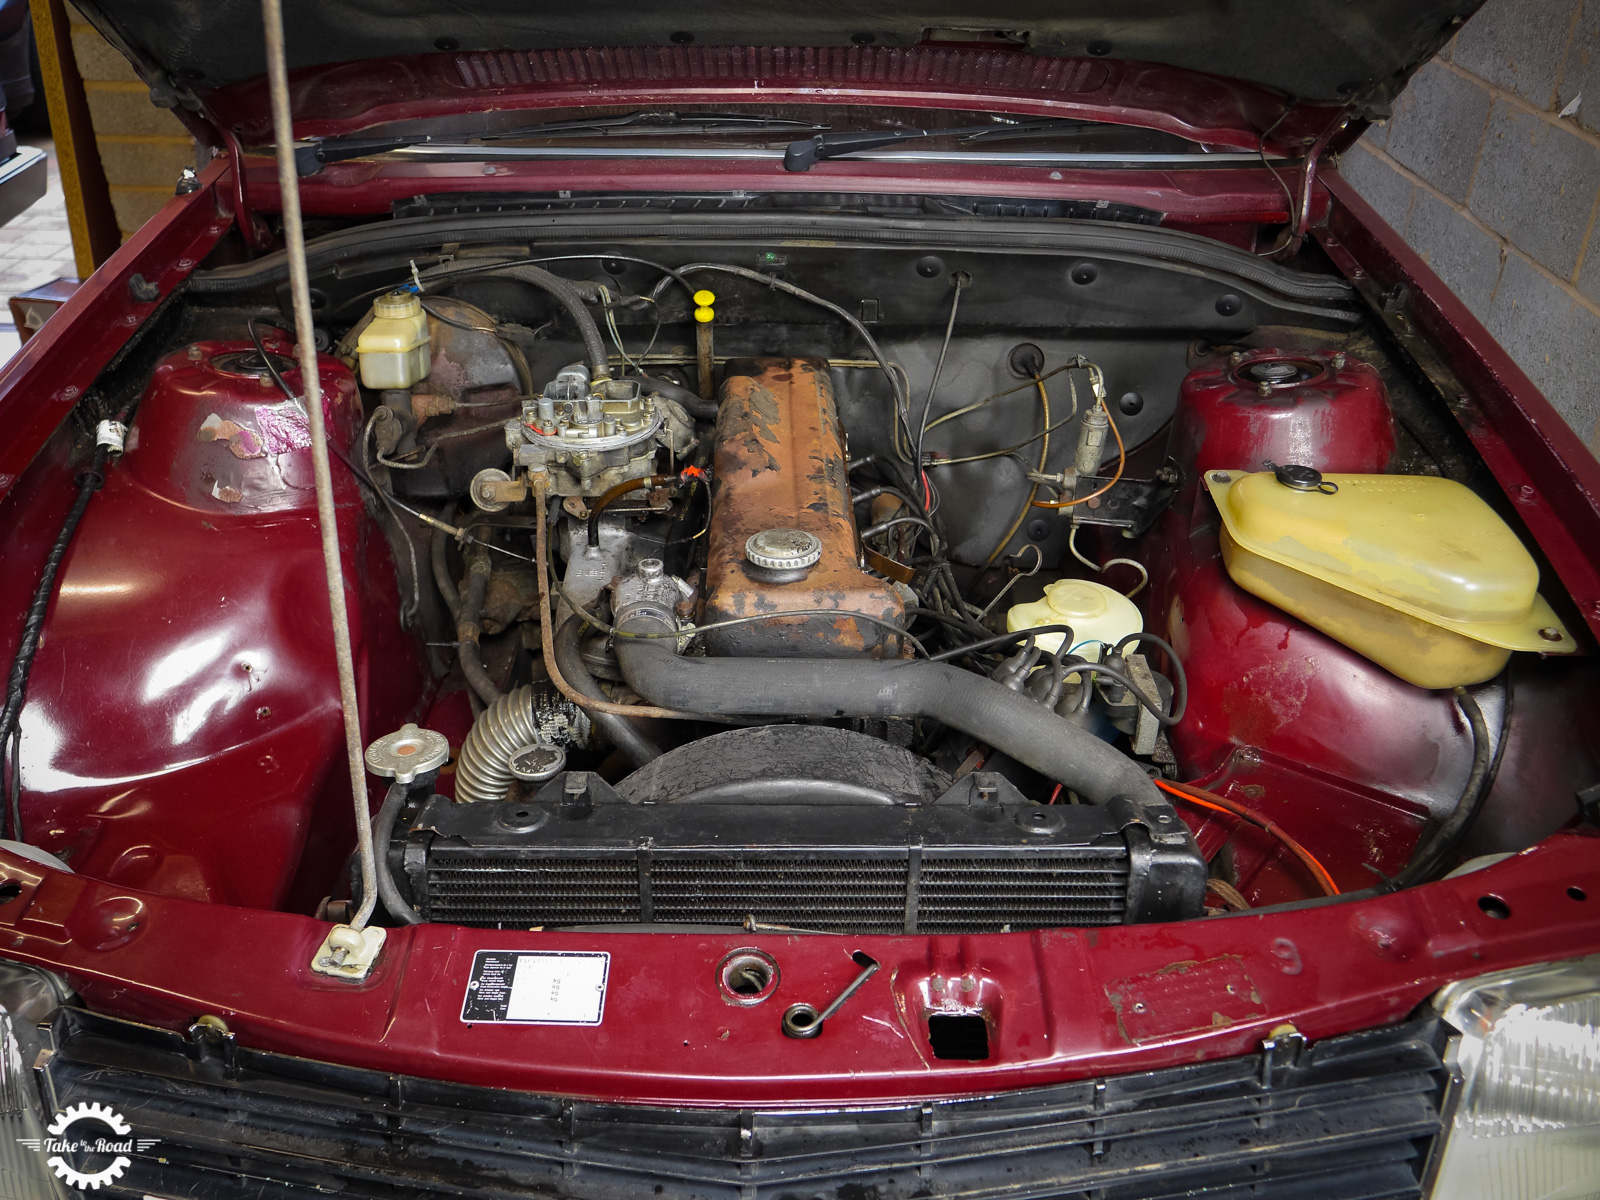 Preventative maintenance for a classic car